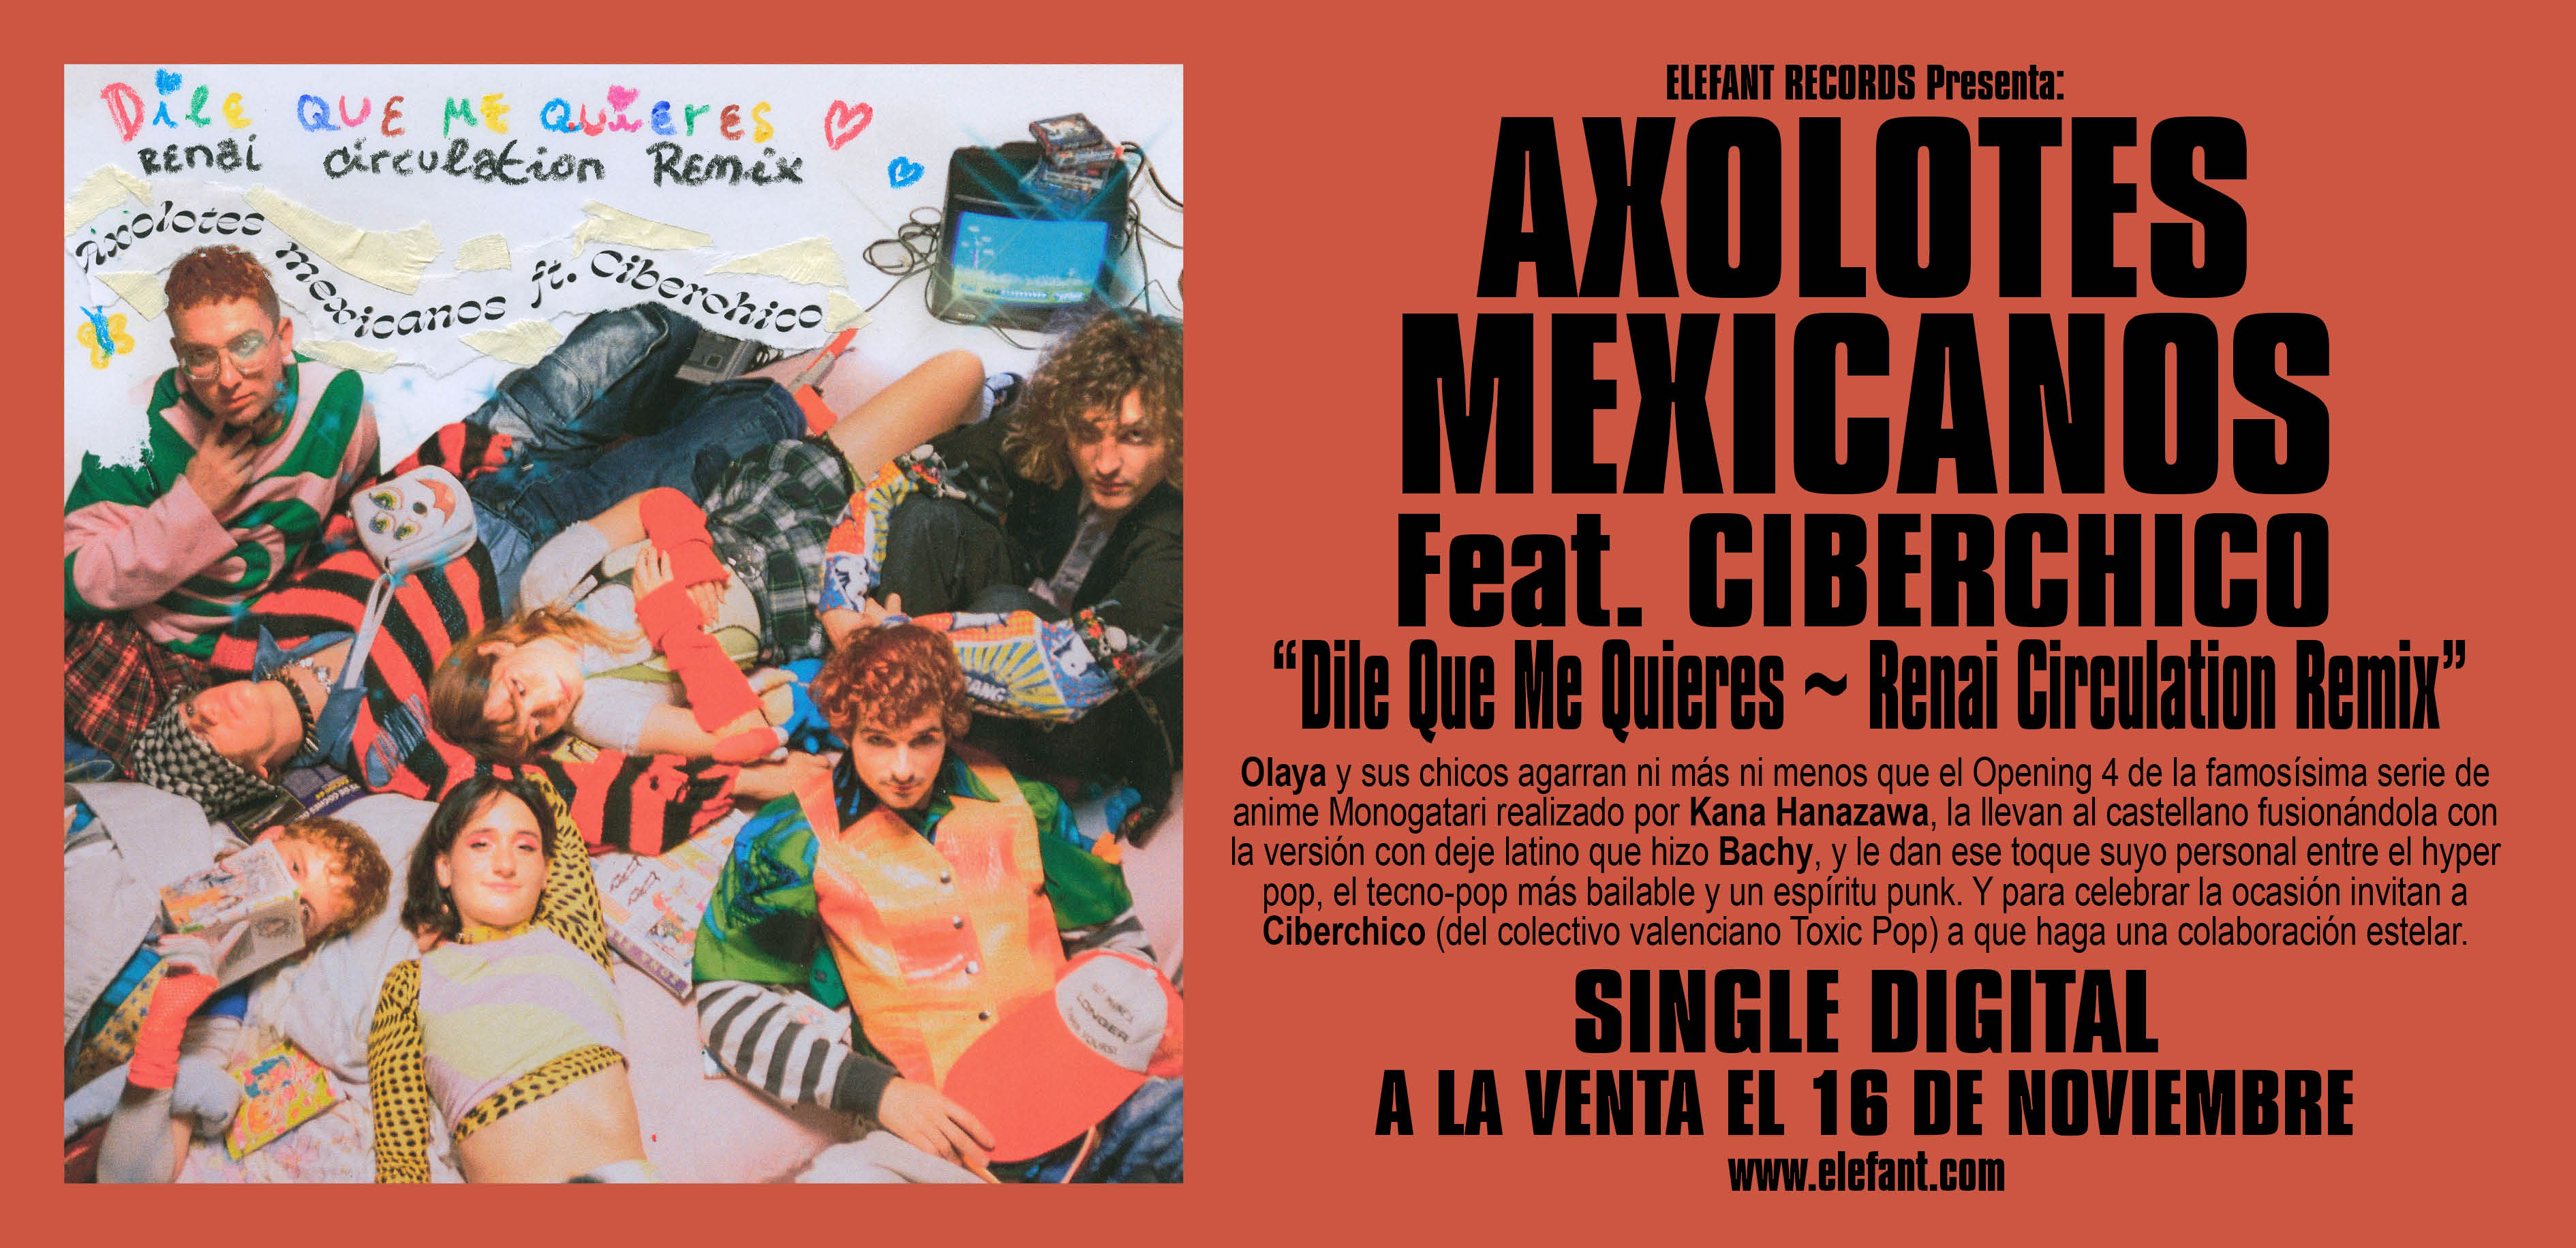 AXOLOTES MEXICANOS feat. CIBERCHICO "Dile que me quieres ~ Renai Circulation Remix" Single Digital 